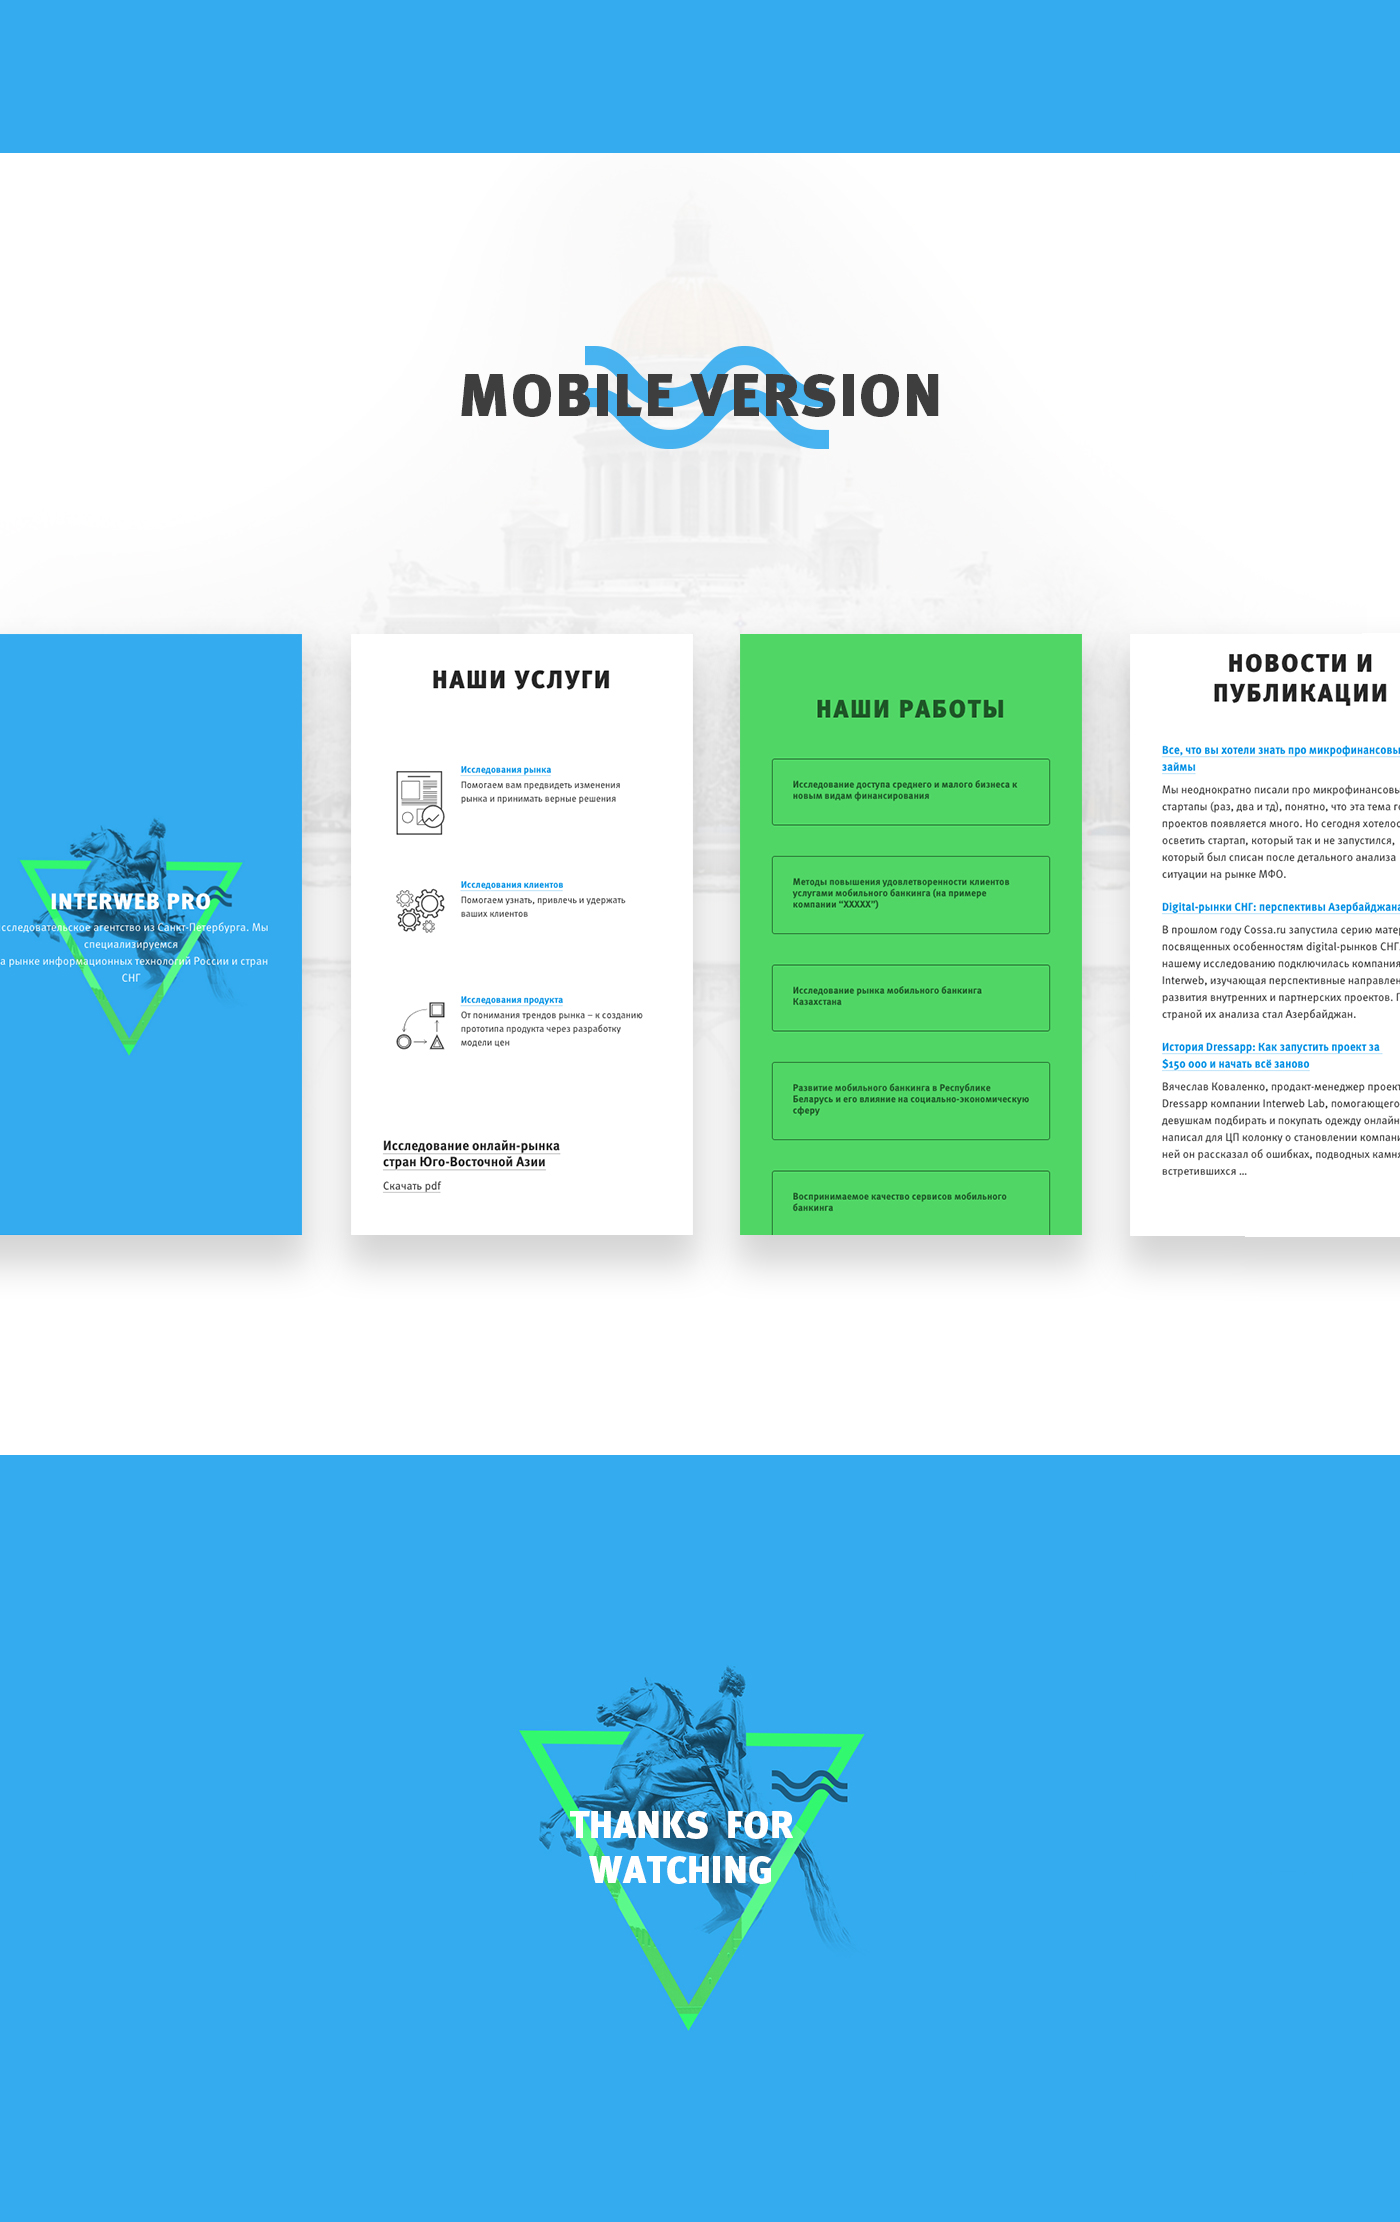 UI ux Web site design minimalizm clean interweb pro